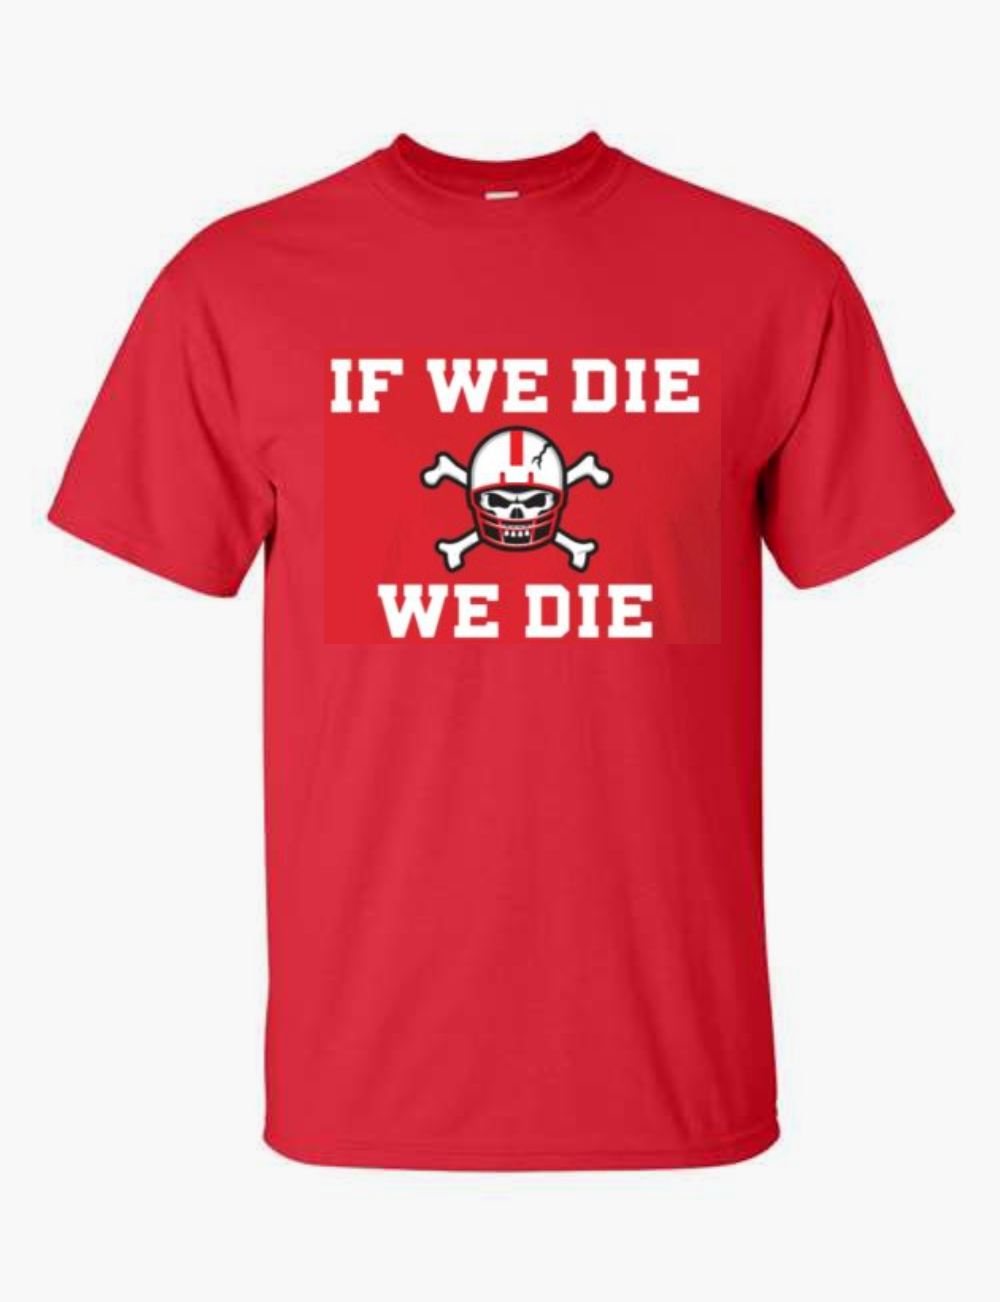 We Die Heavy Cotton T-Shirt